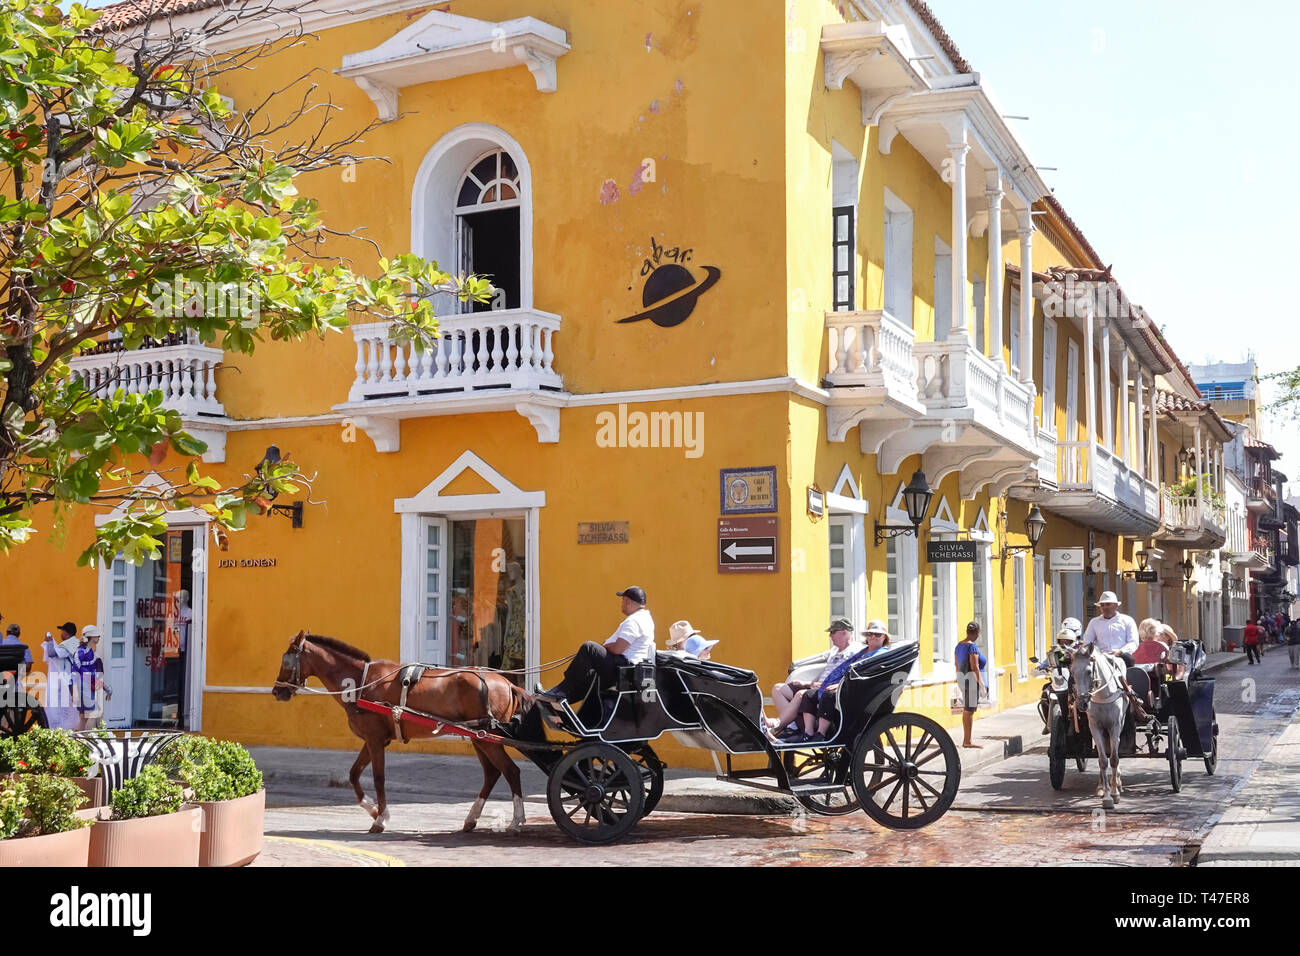 Cartagena Colombie, Plaza de Santa Teresa, architecture coloniale, chevaux tour en calèche, les visiteurs voyage voyage tourisme touristique site touristique Banque D'Images